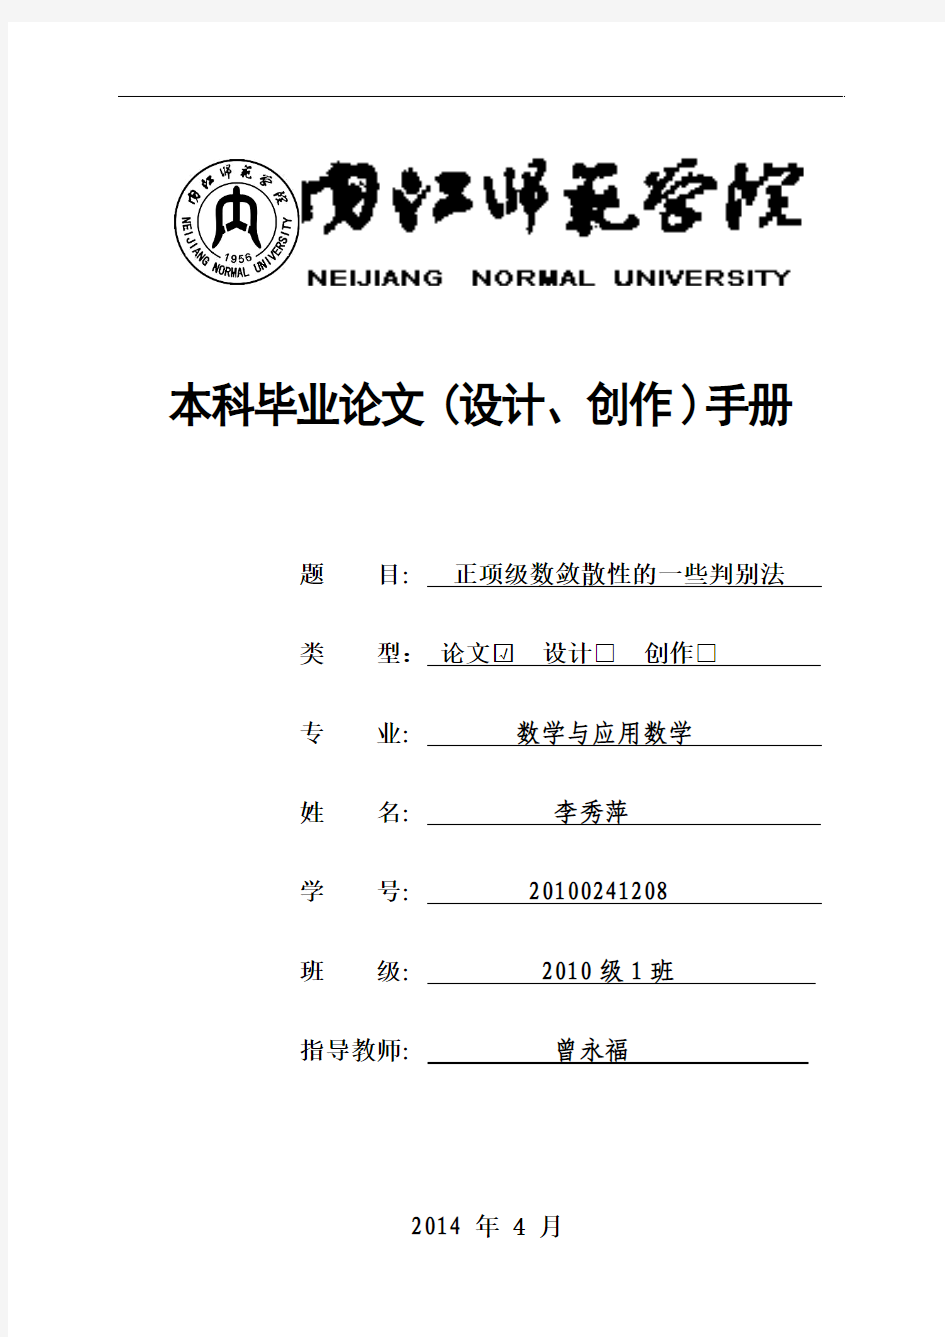 内江师范学院本科毕业论文(设计、创作)手册(征求意见稿201311)